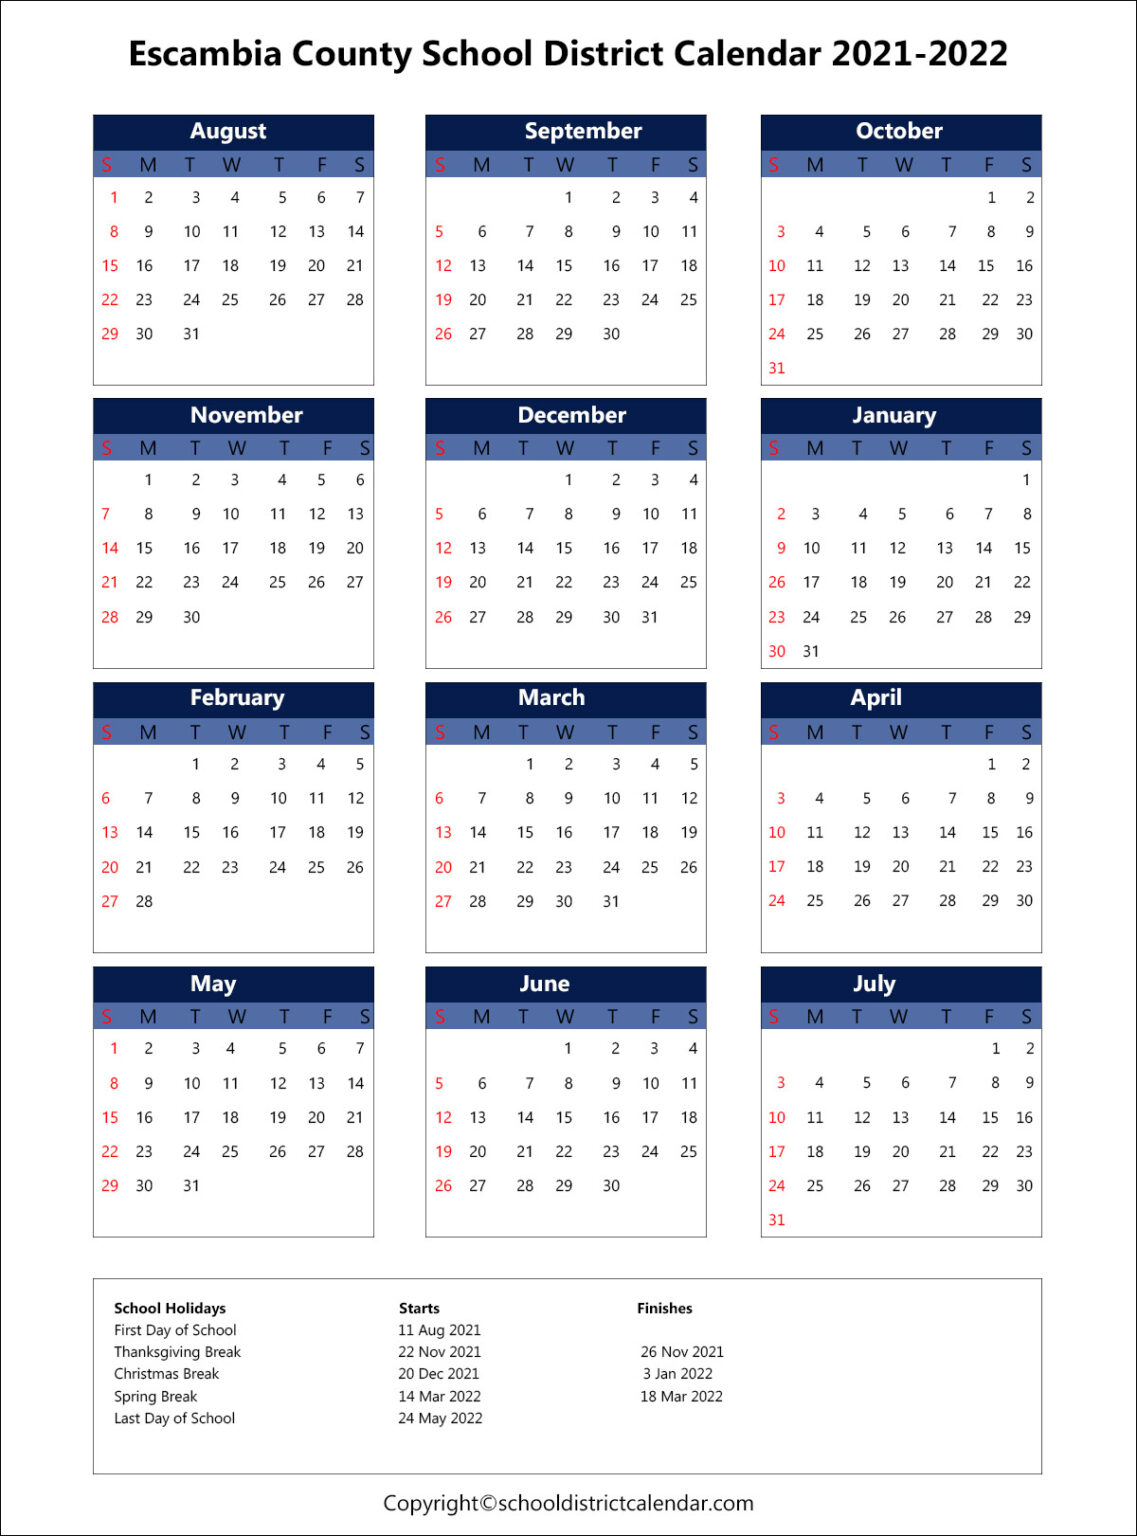 Escambia County School District Calendar Holidays 2021-2022